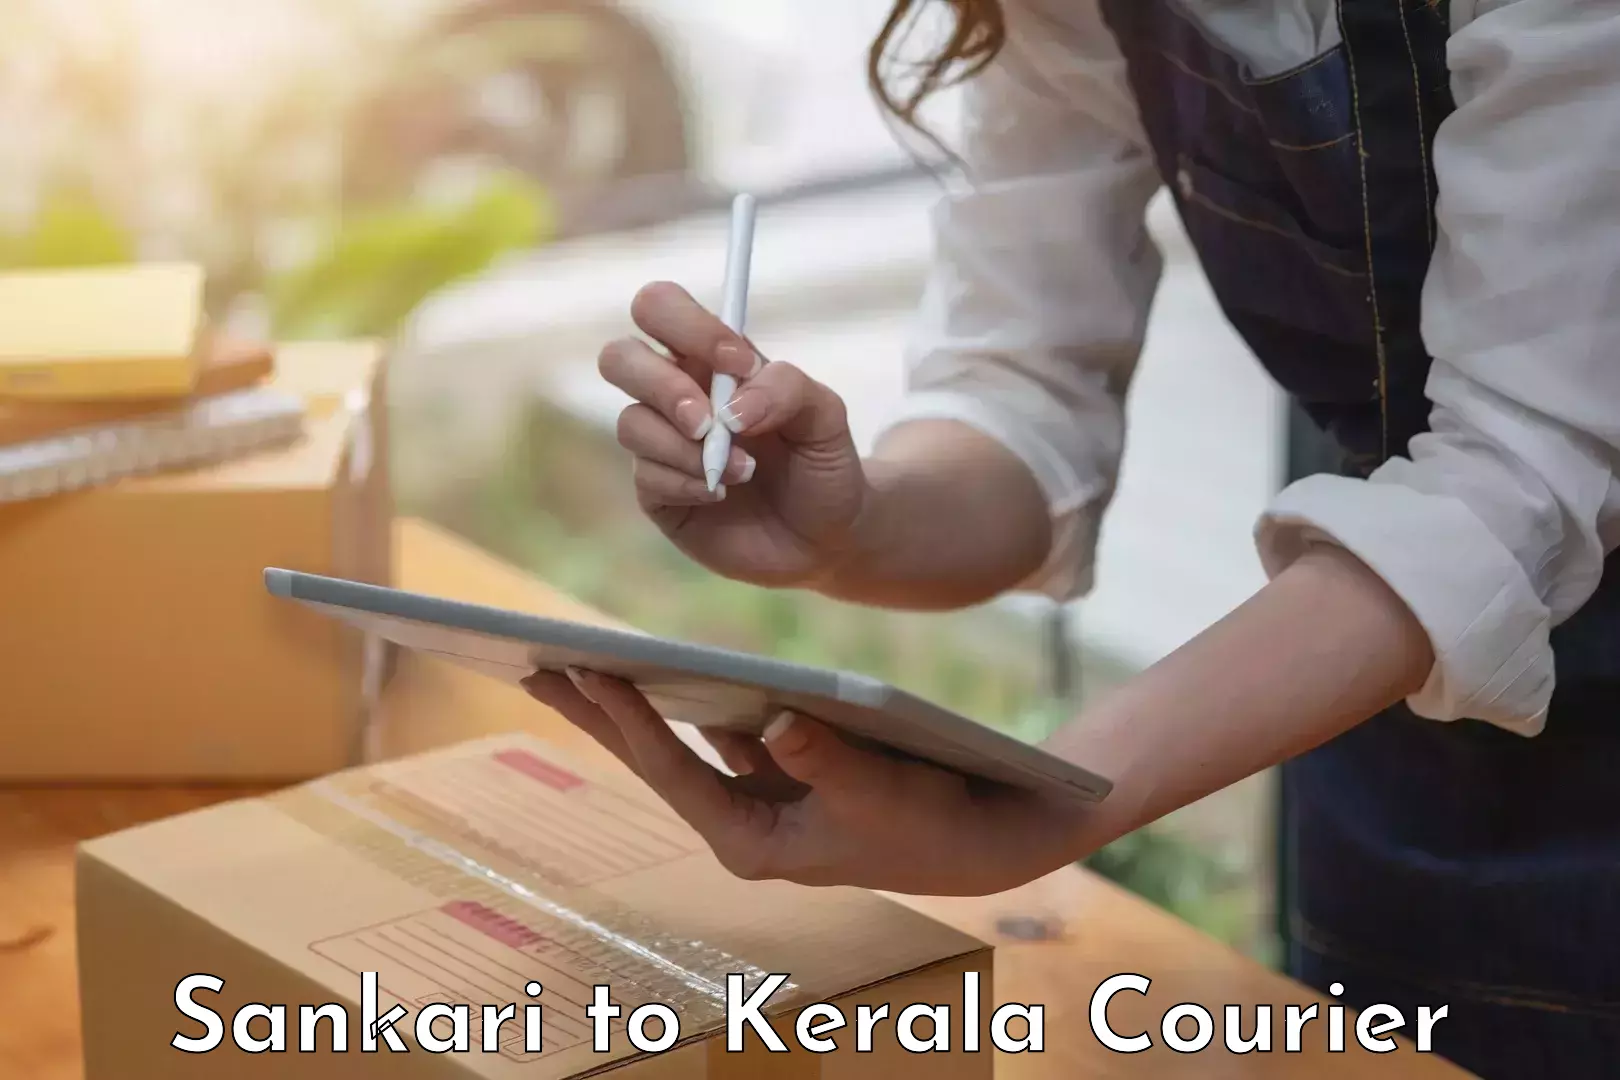 Furniture transport specialists in Sankari to Kerala